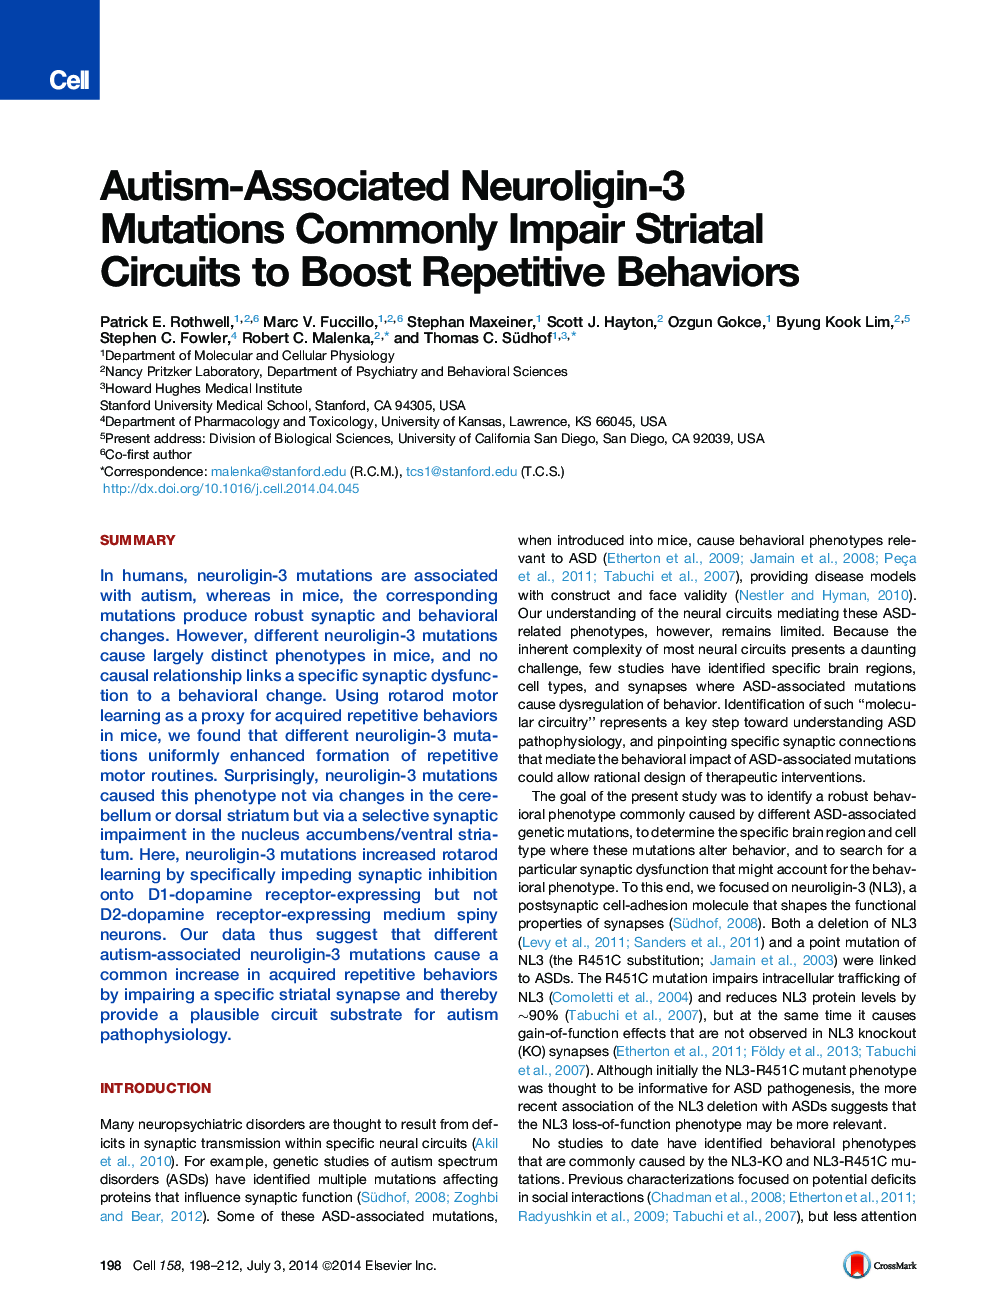 جهش های نورولوژیک -3 وابسته به اوتیسم به طور معمول باعث کاهش رفتارهای تکراری می شود 